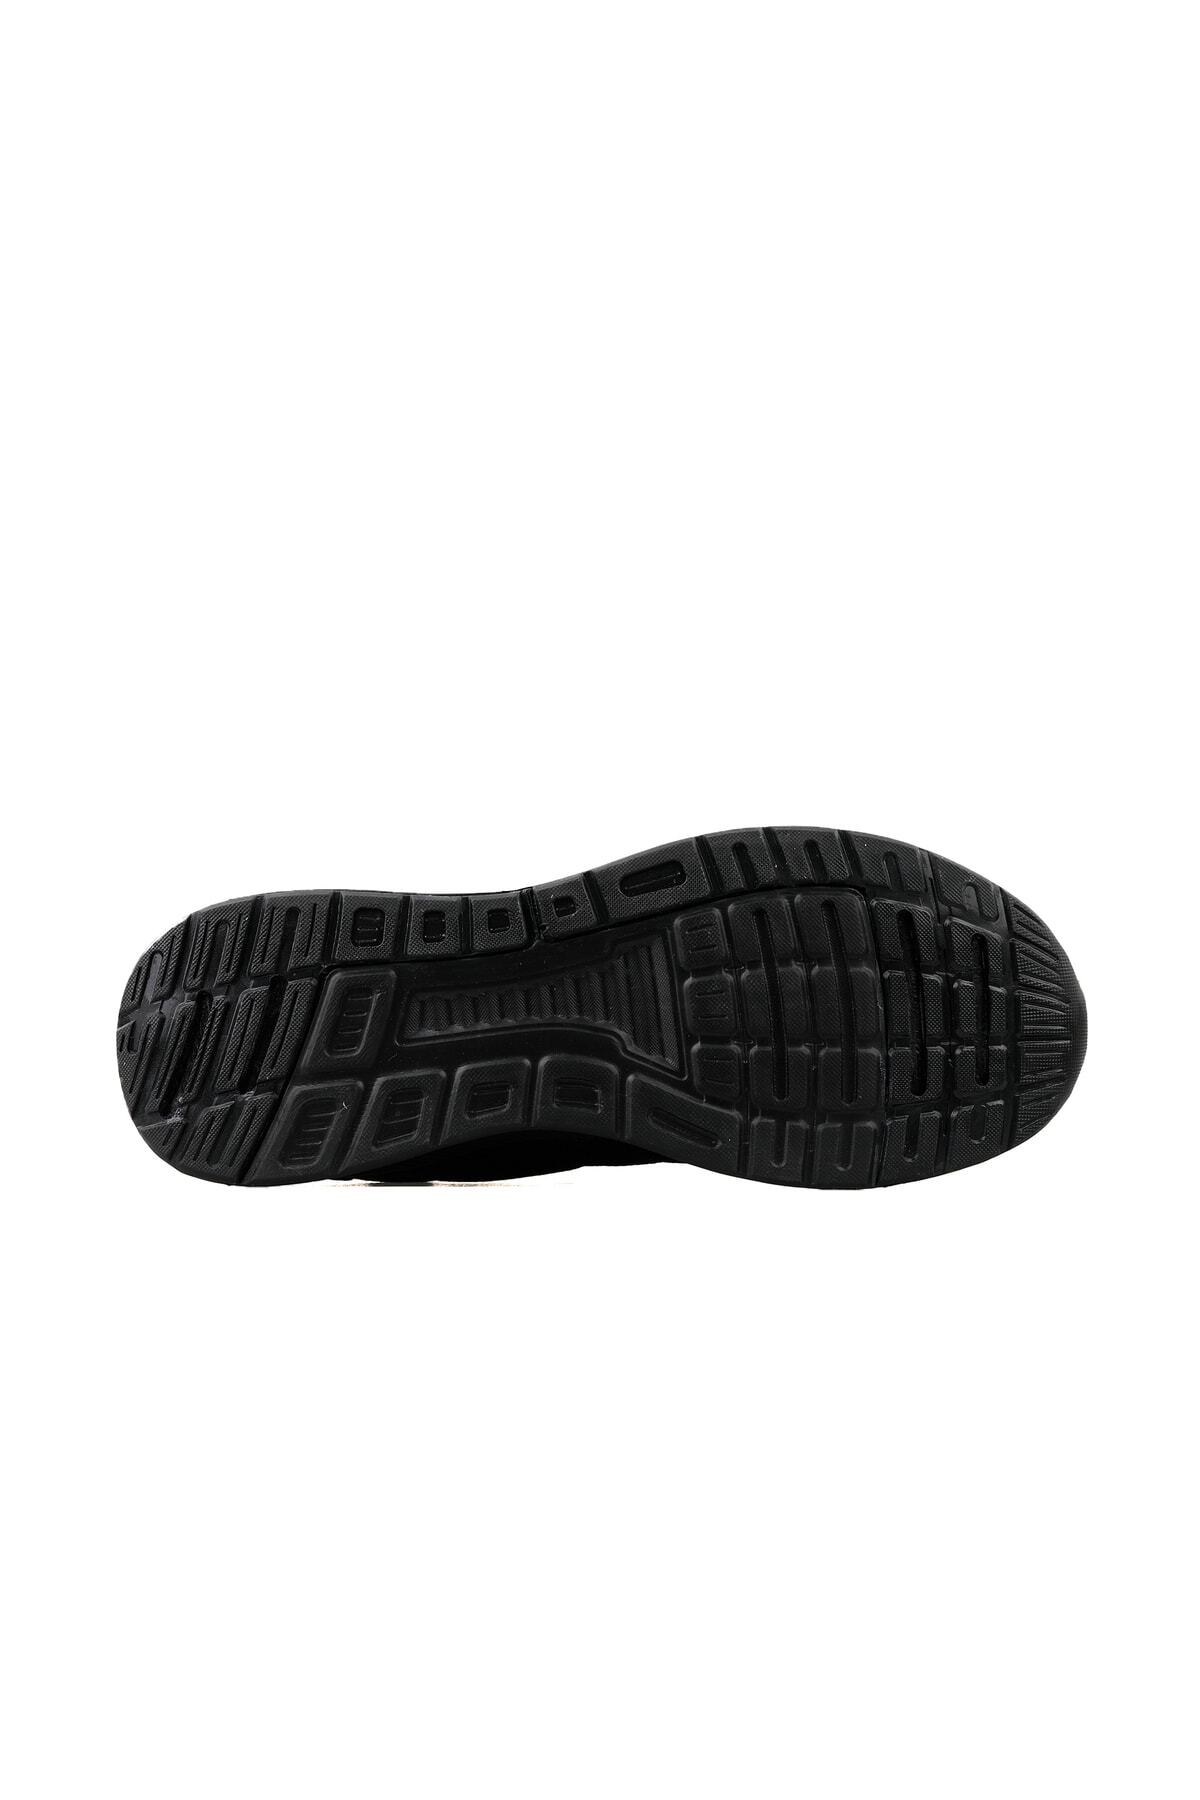 hummel کفش روزانه مردان جامپر 900224-2042 سیاه